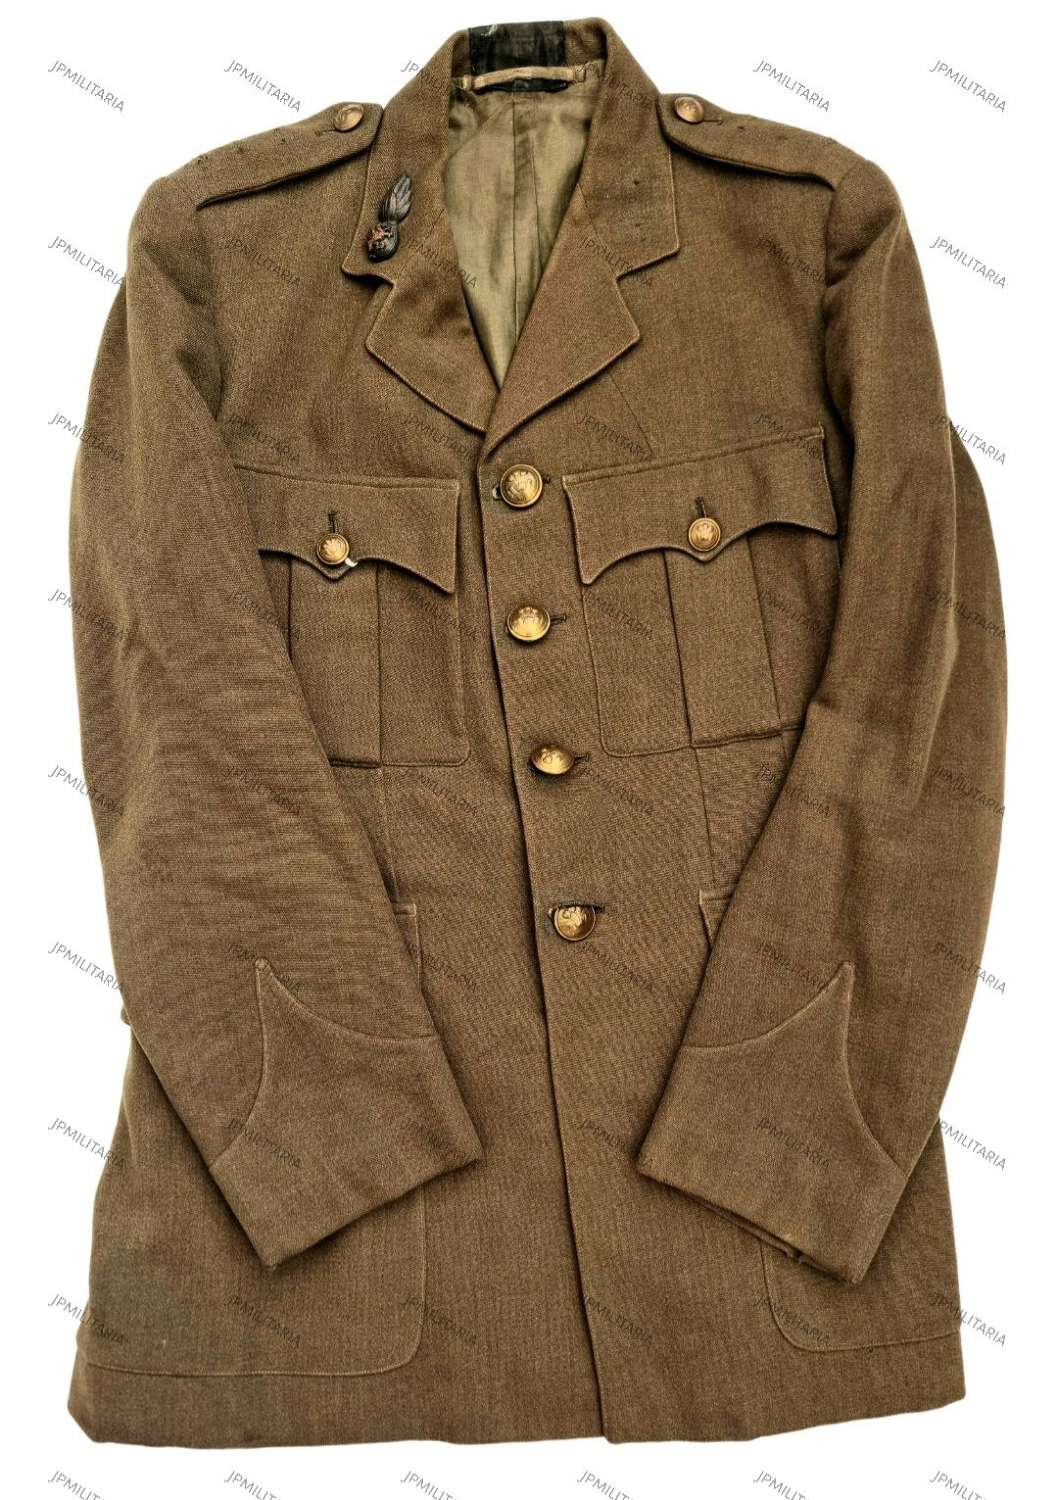 WW2/Post War RWF Officers jacket